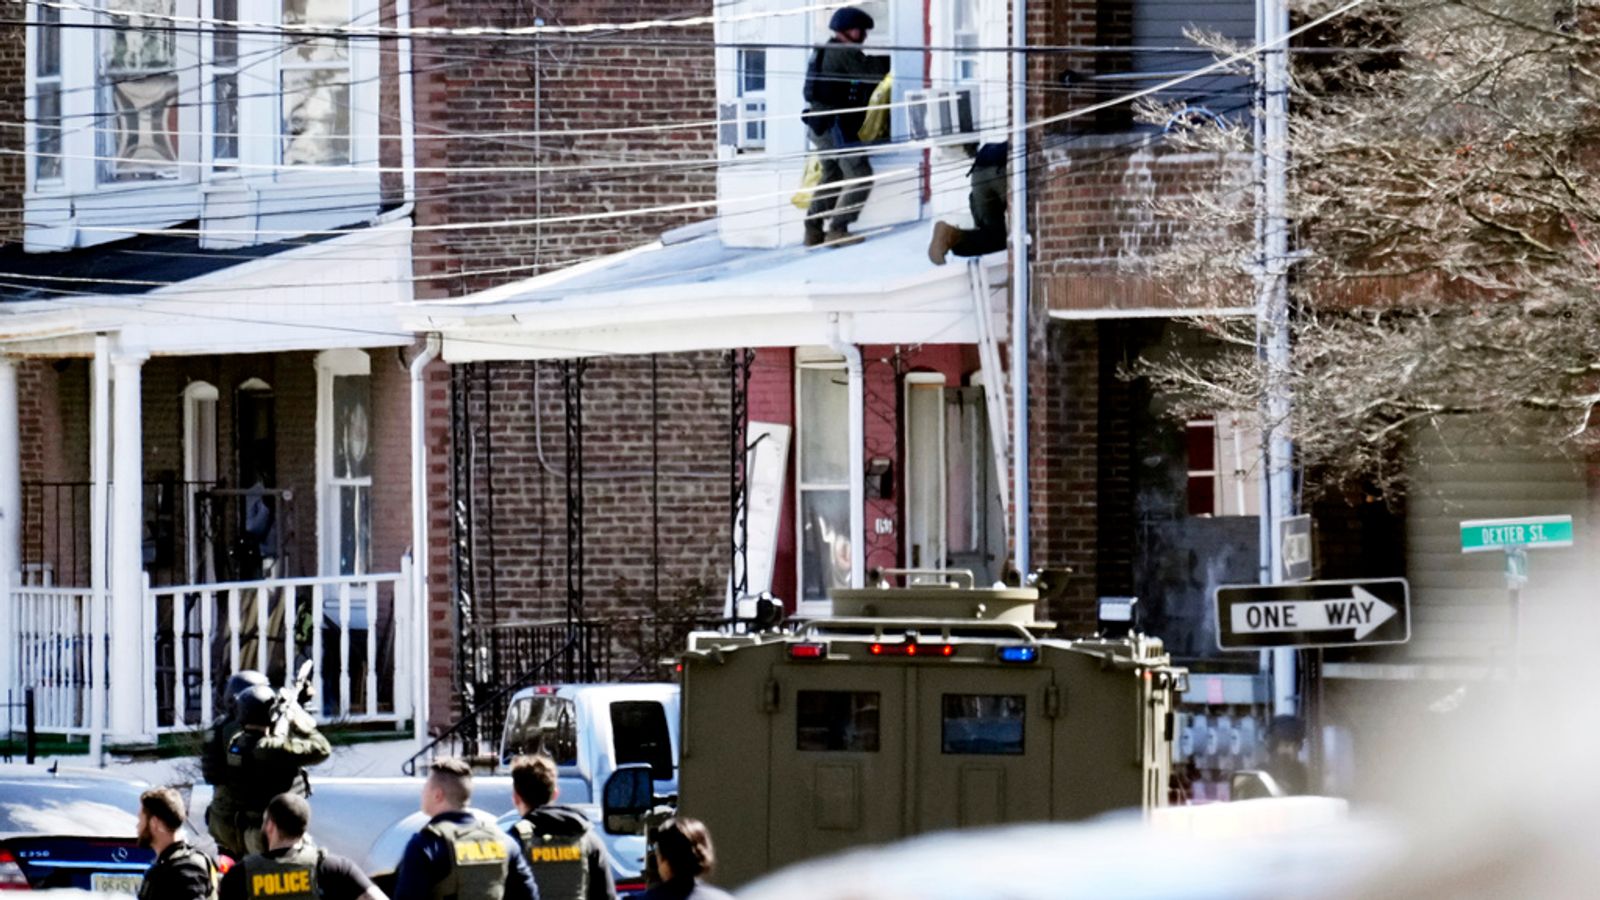 Un homme armé présumé s'est barricadé chez lui après que trois personnes ont été abattues dans une ville près de Philadelphie.  Actualités américaines